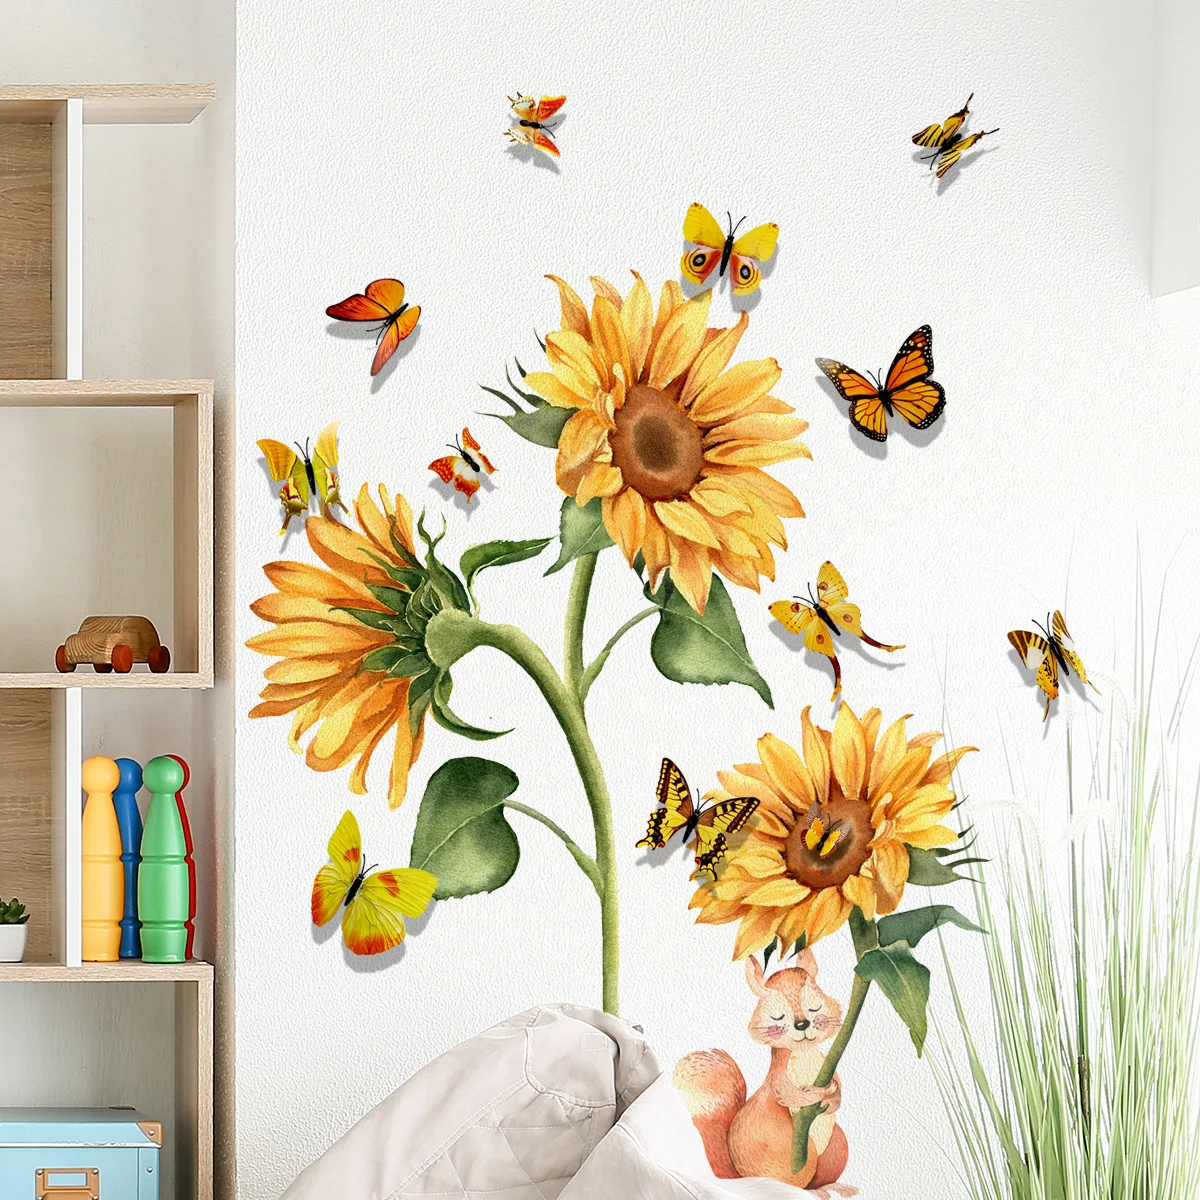 Zollor наклейки с подсолнухами Plus 12 трехмерные желтые бабочки украшение для комнаты